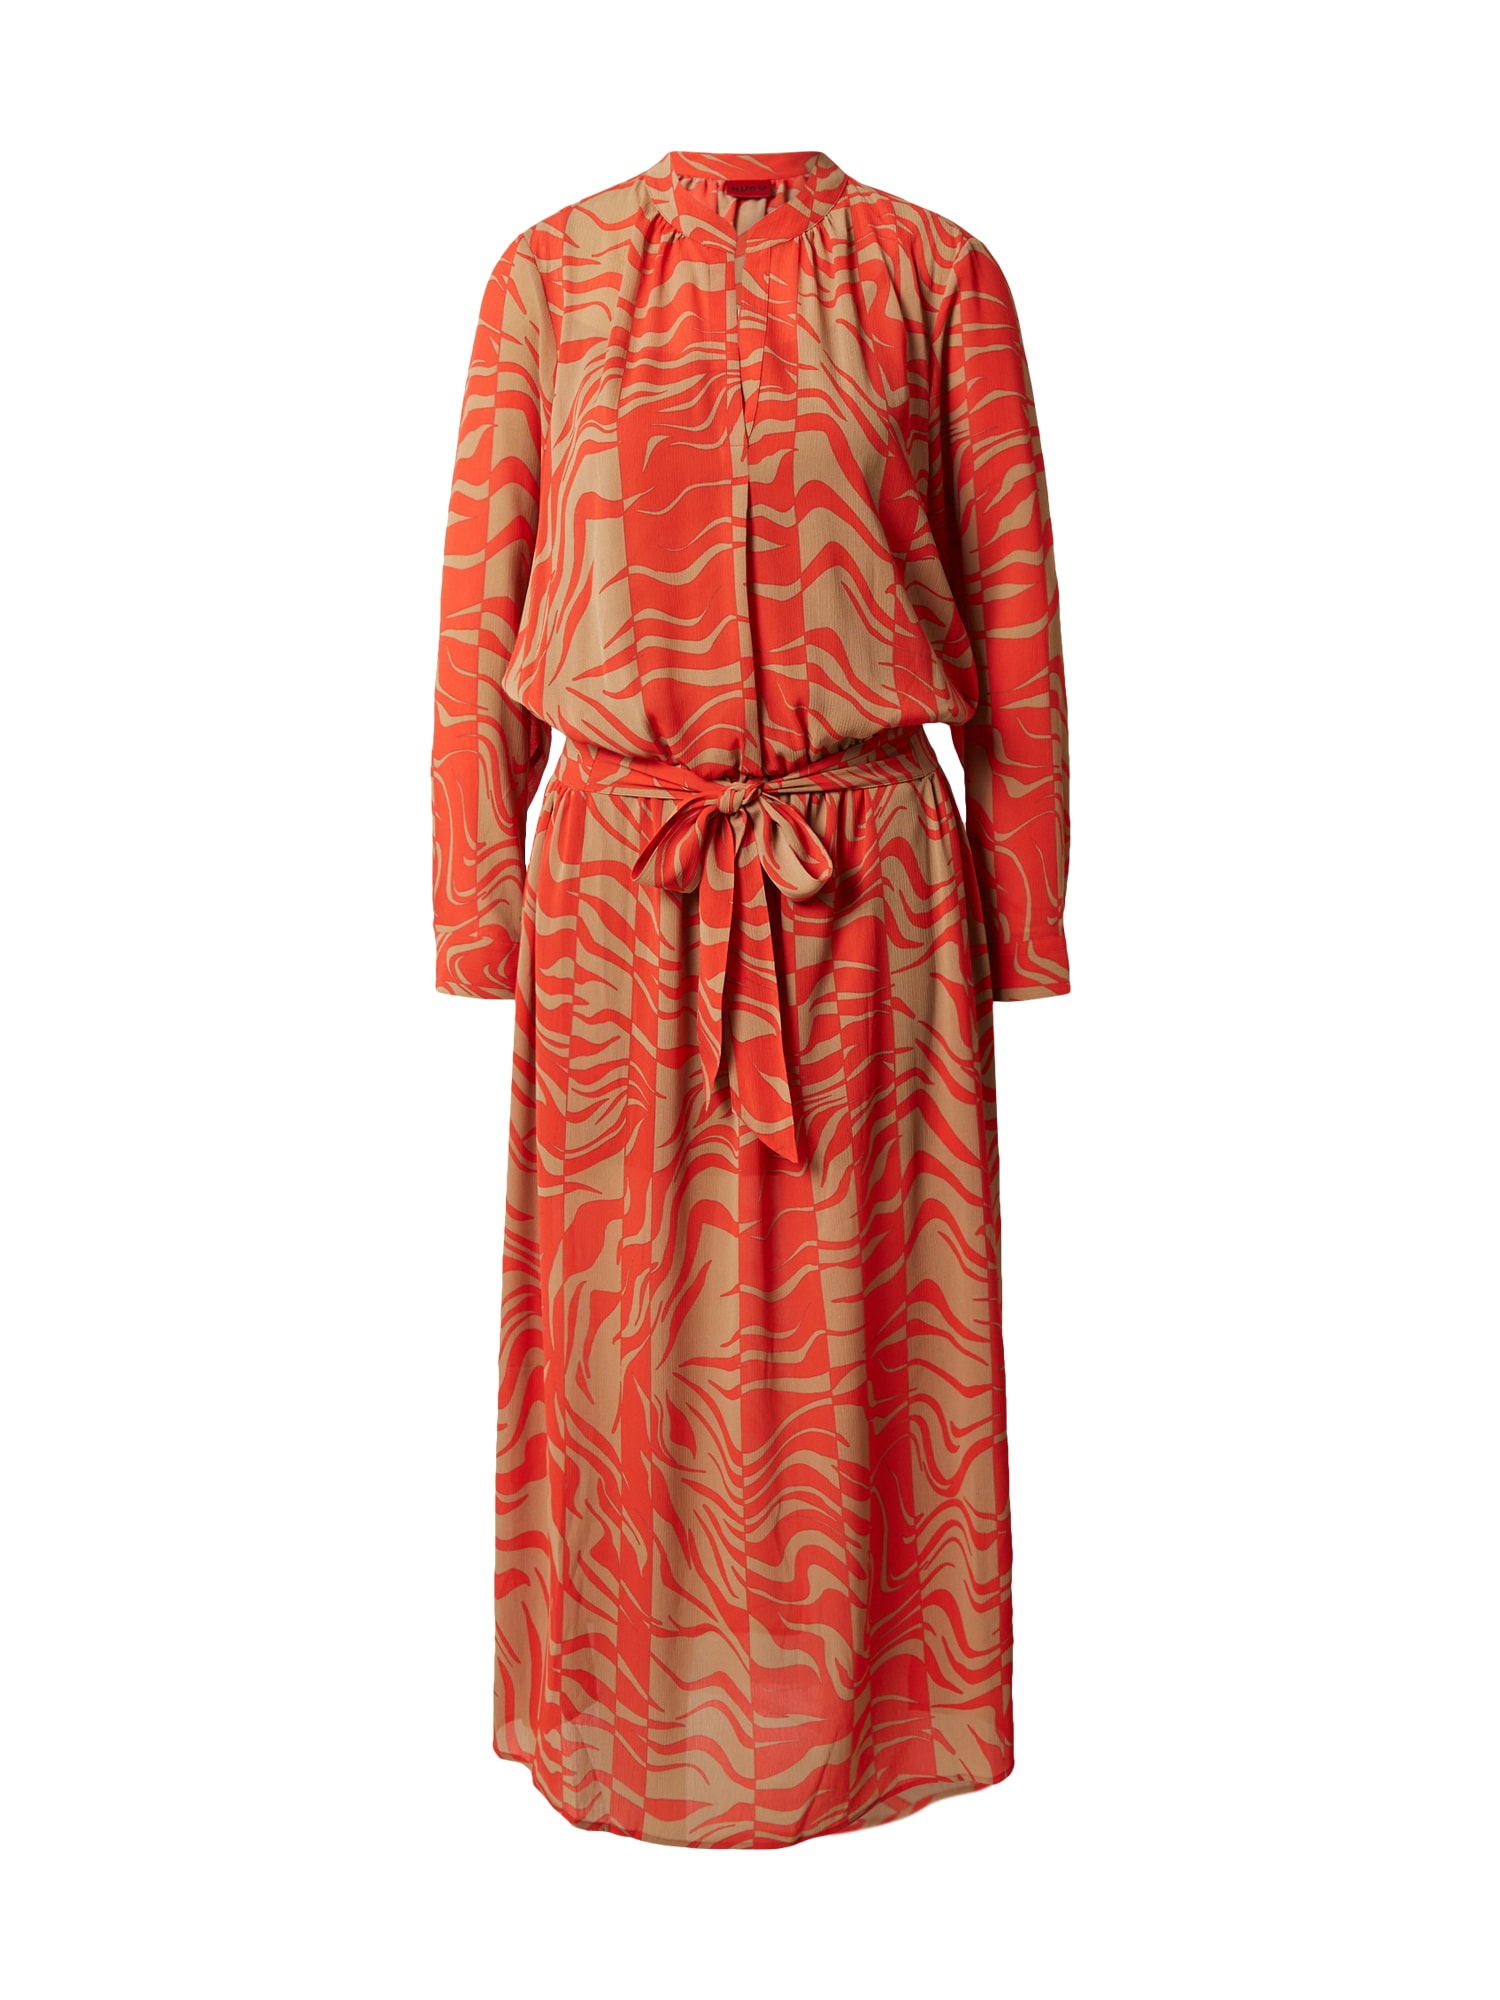 Šaty Kaleria hnedá oranžovo červená HUGO